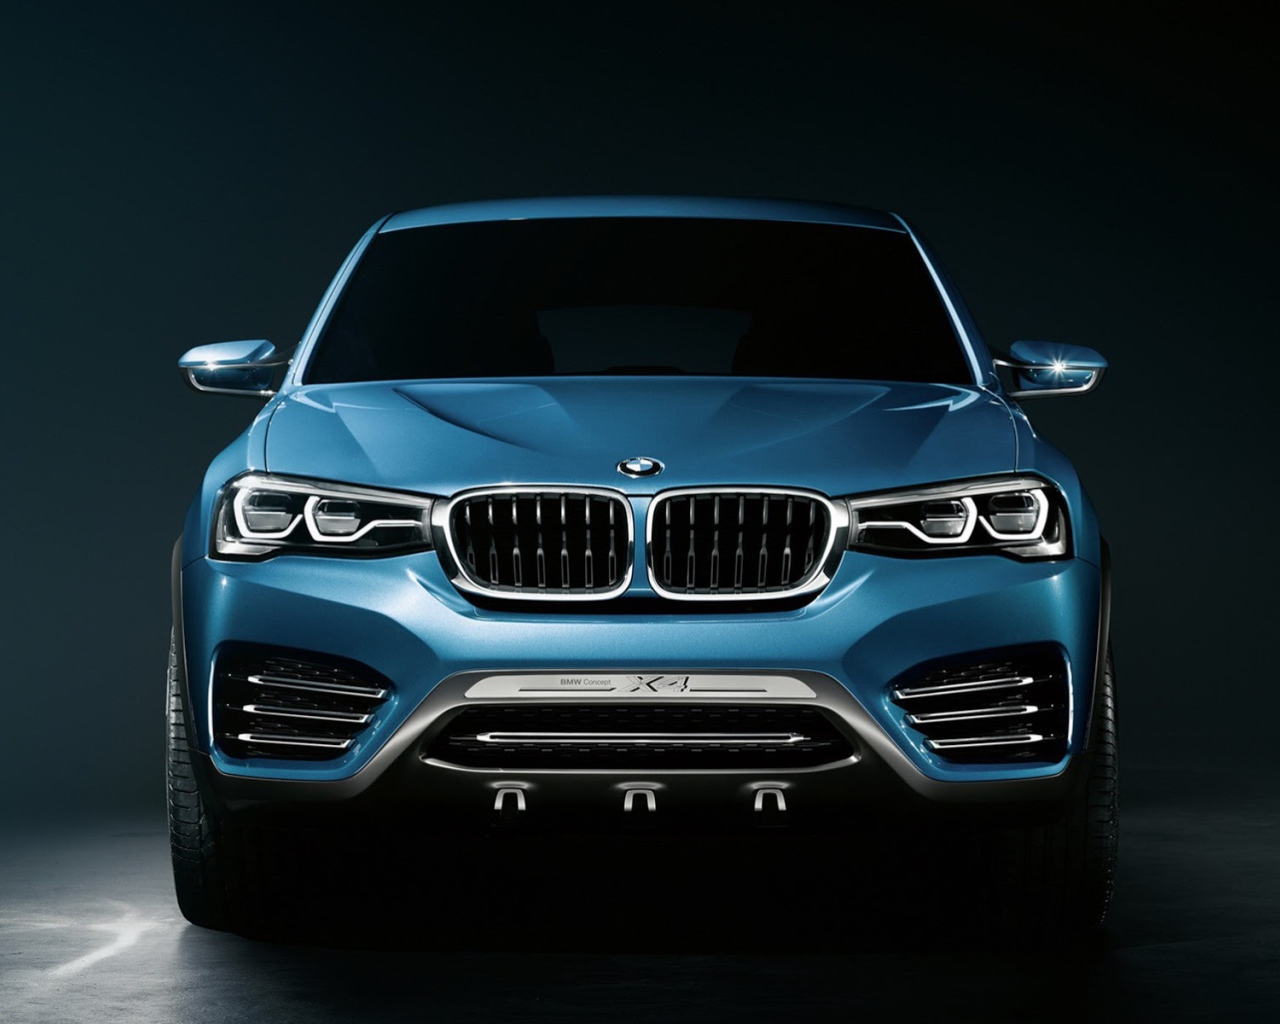 BMW X4 crossover on dark background